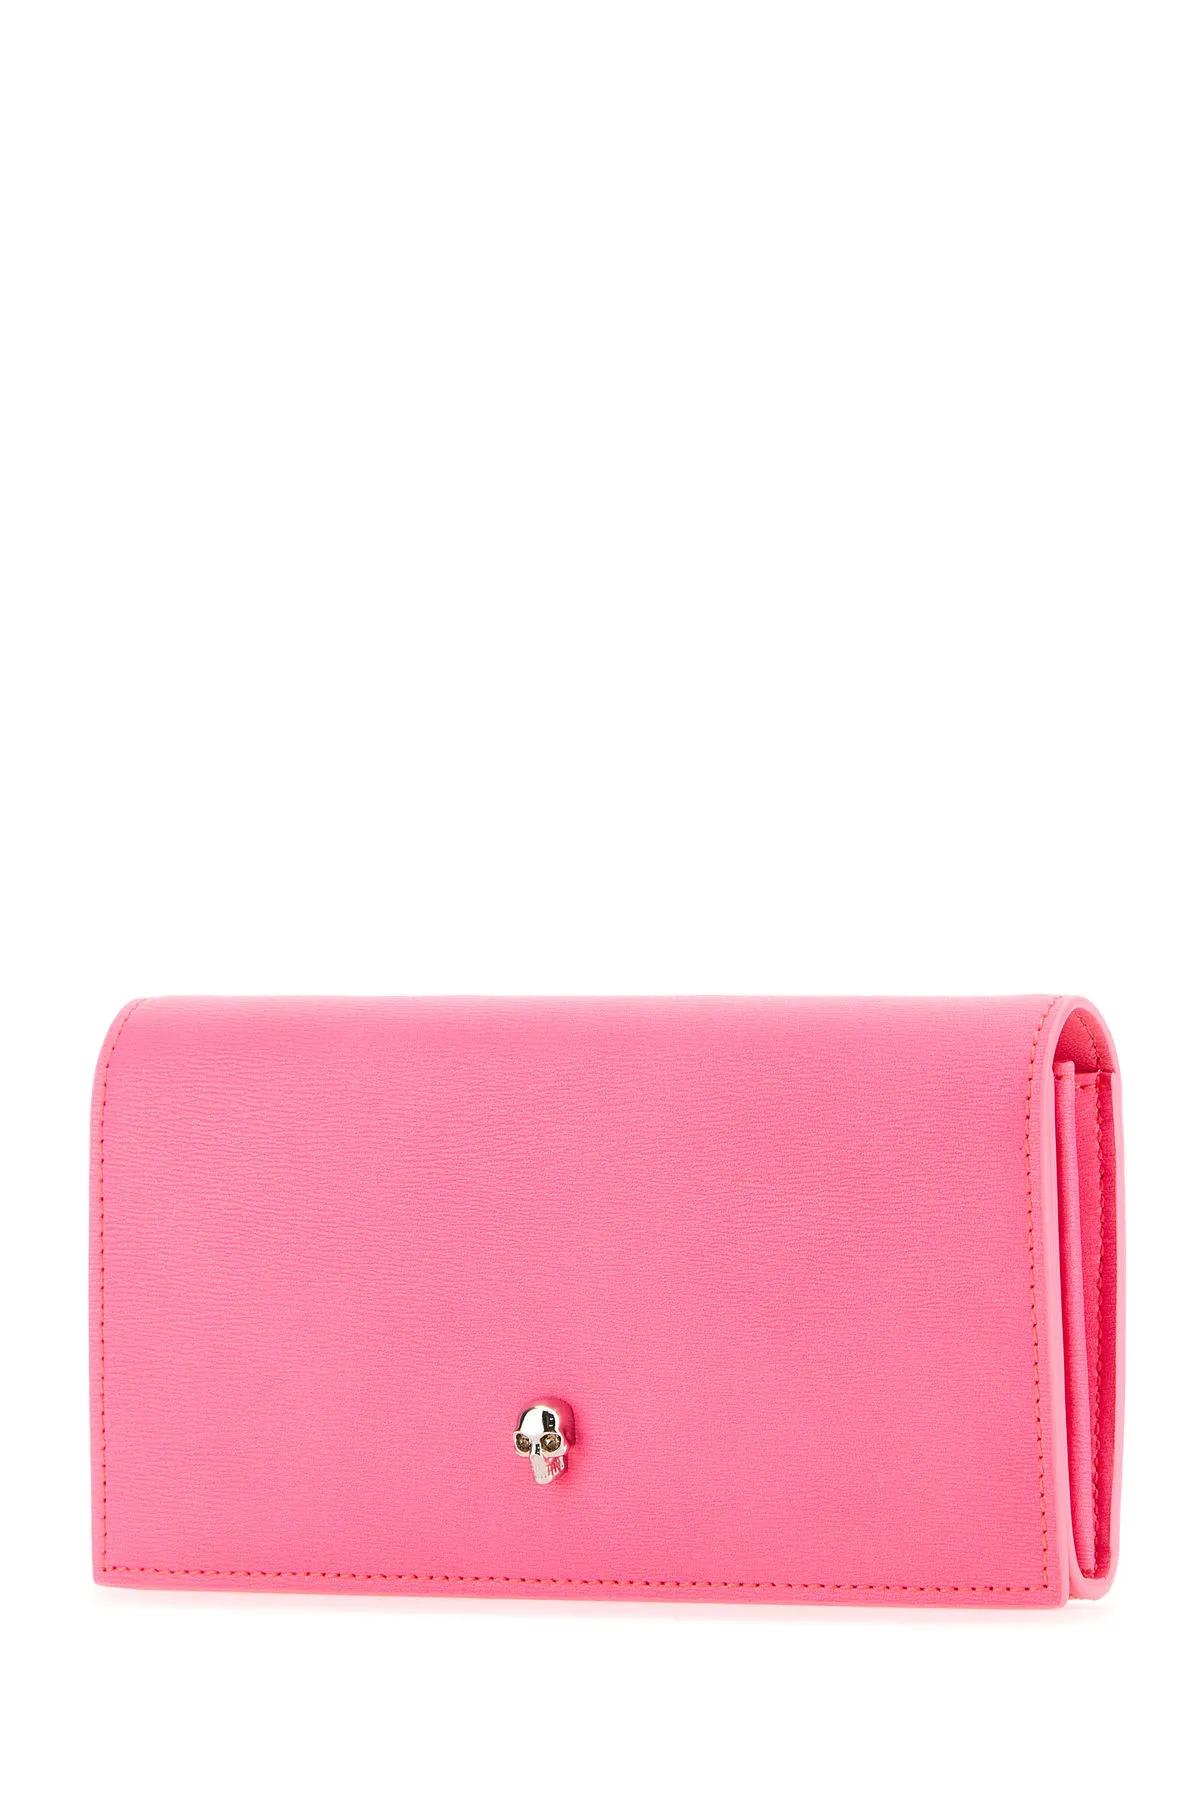 Shop Alexander Mcqueen Fluo Pink Leather Wallet